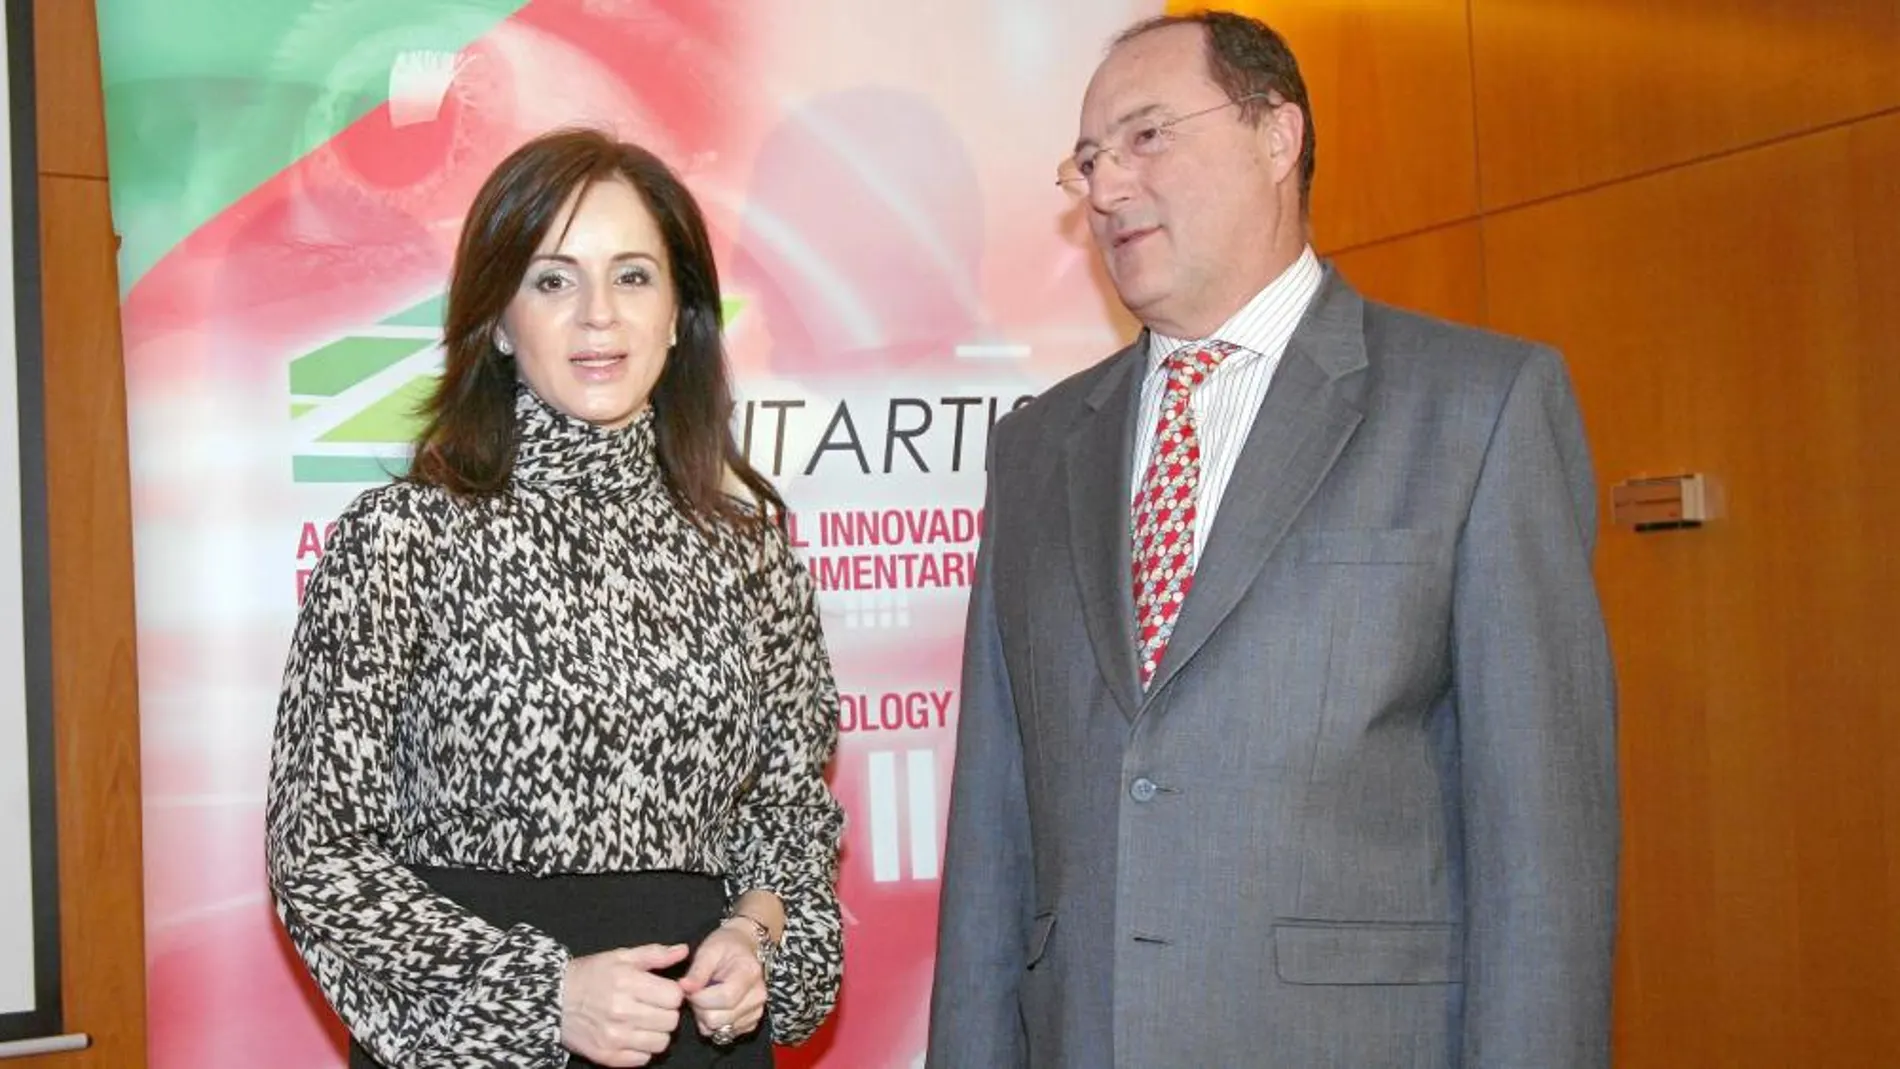 La consejera de Agricultura y Ganadería, Silvia Clemente, junto al presidente de la red Vitartis, Carlos Moro